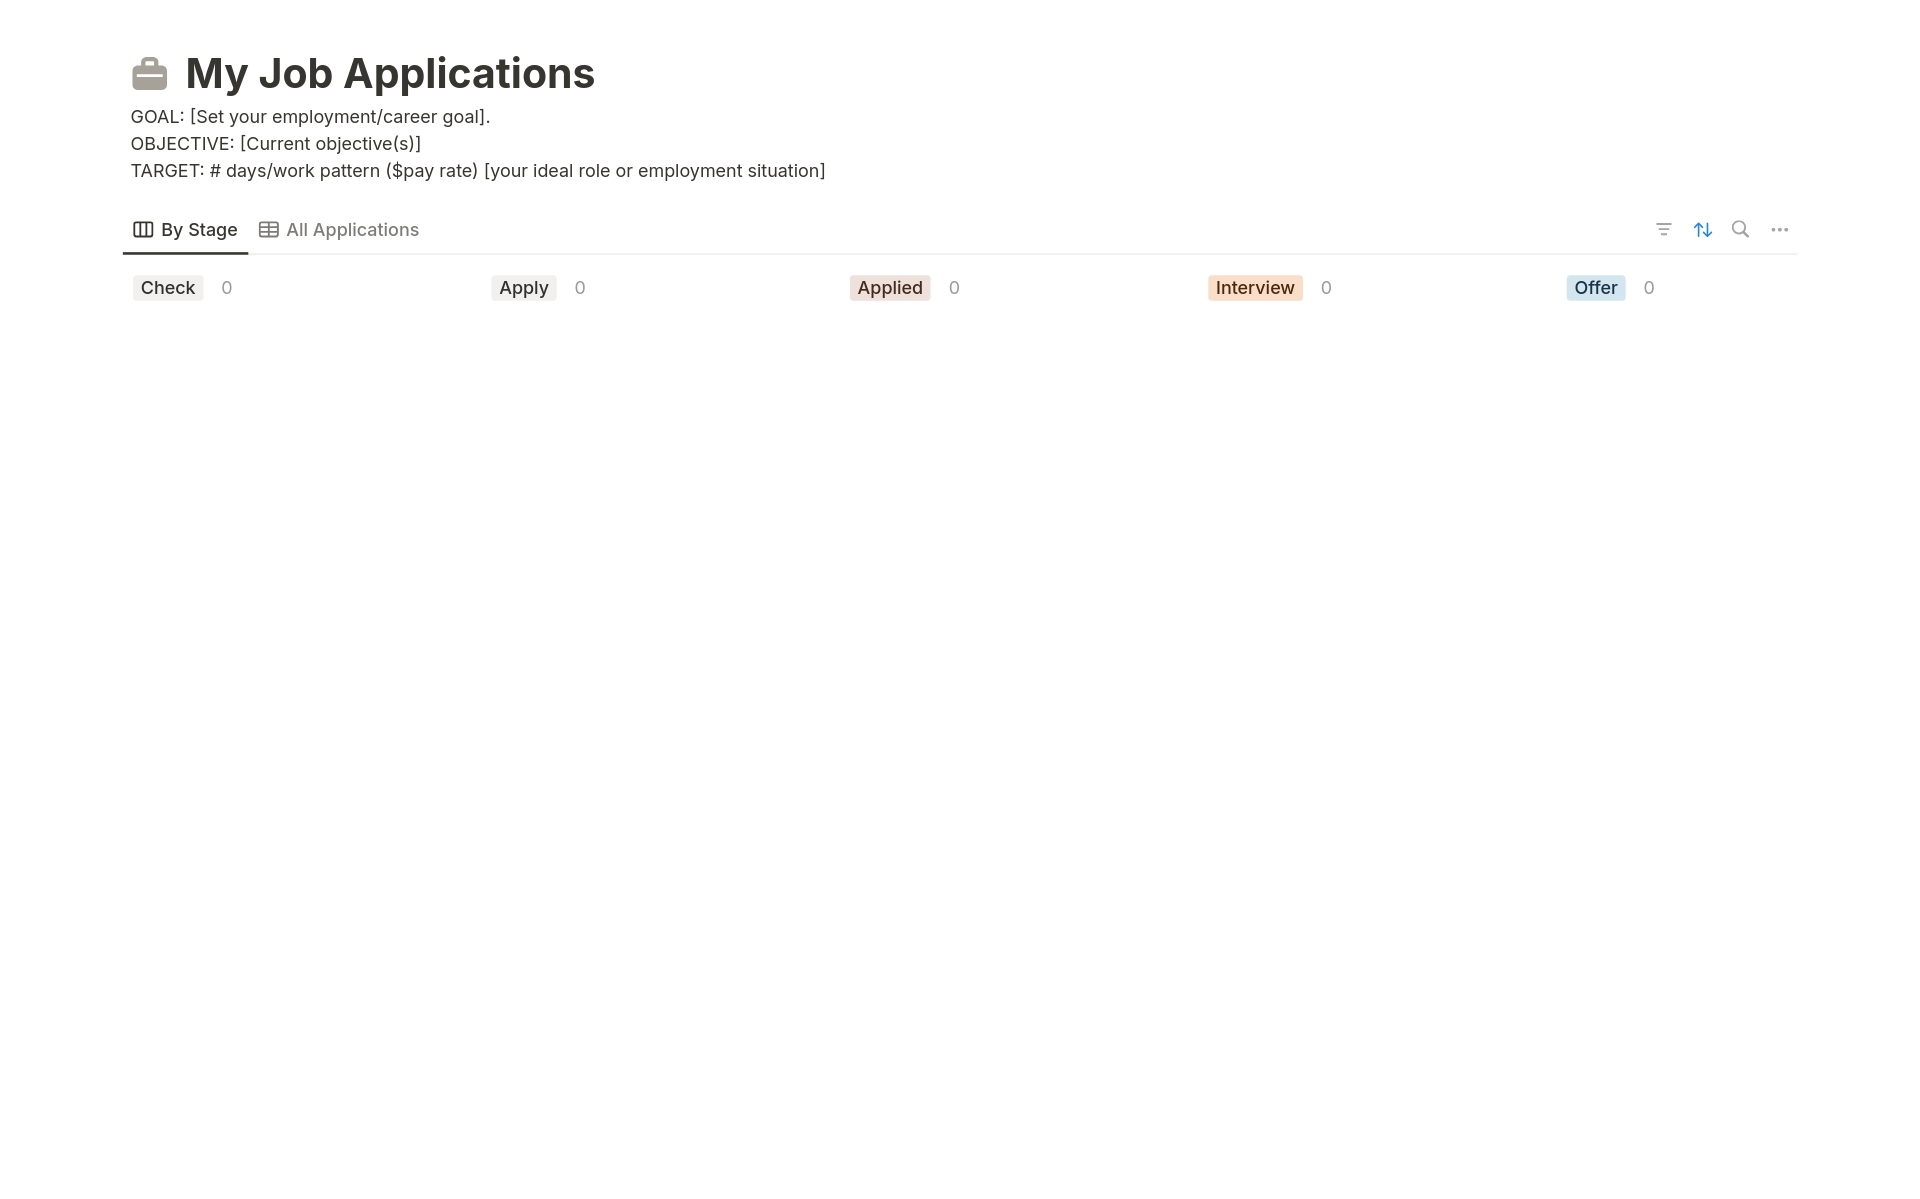 Vista previa de plantilla para My Job Applications tracker